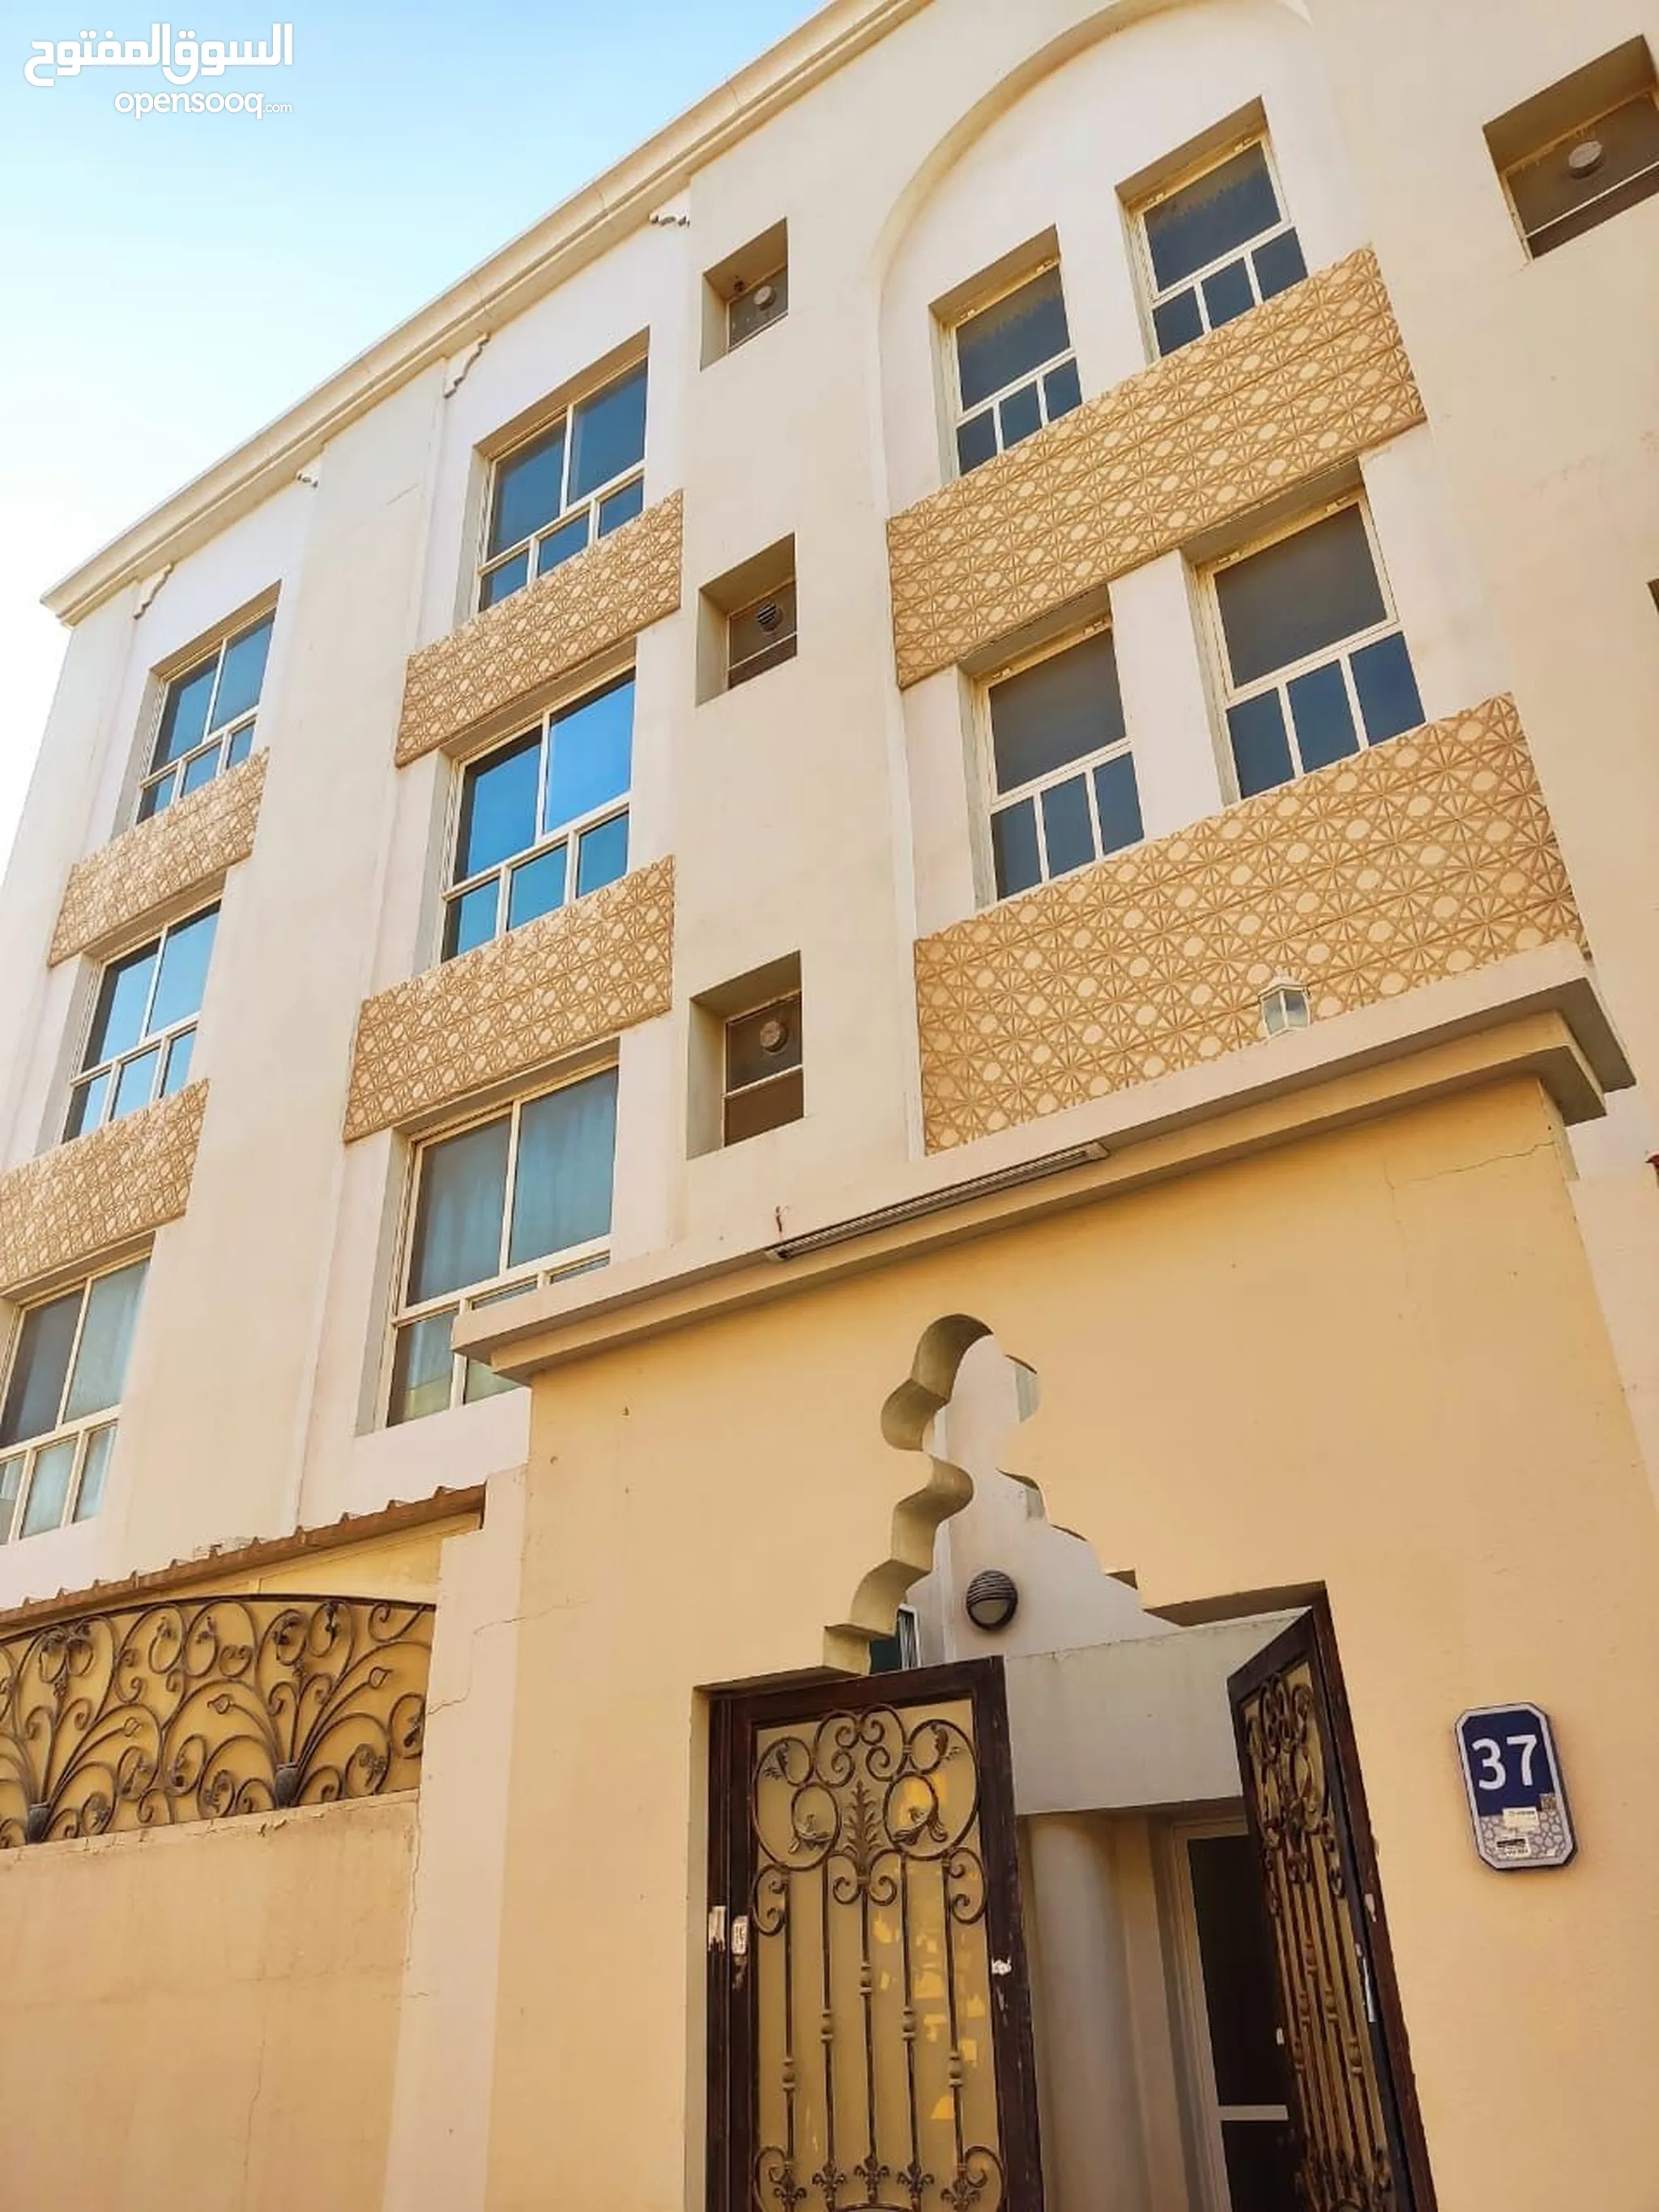 شقق للايجار 4 غرف نوم في الإمارات : السوق المفتوح